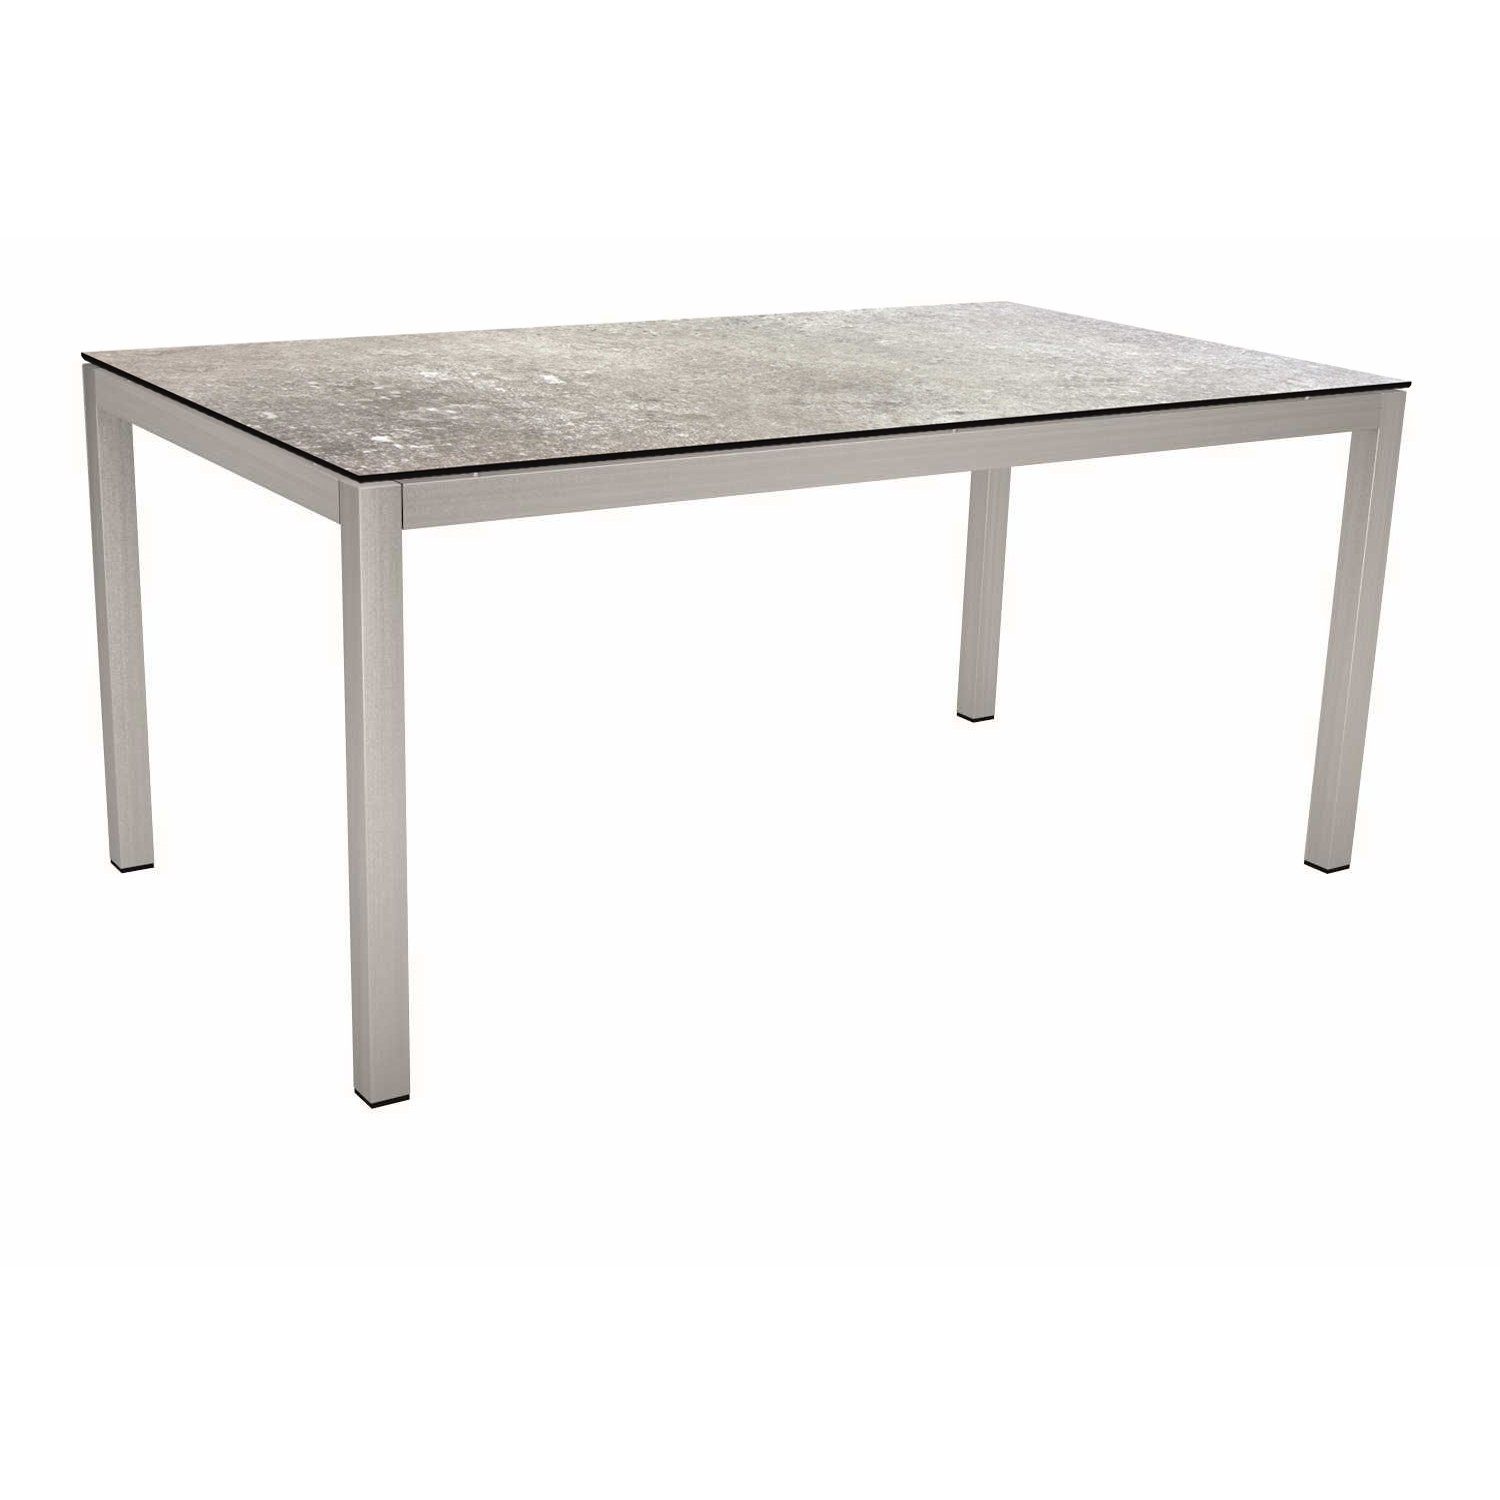 Stern Tischsystem, Gestell Edelstahl Vierkantrohr, Tischplatte HPL Vintage stone, 130x80 cm